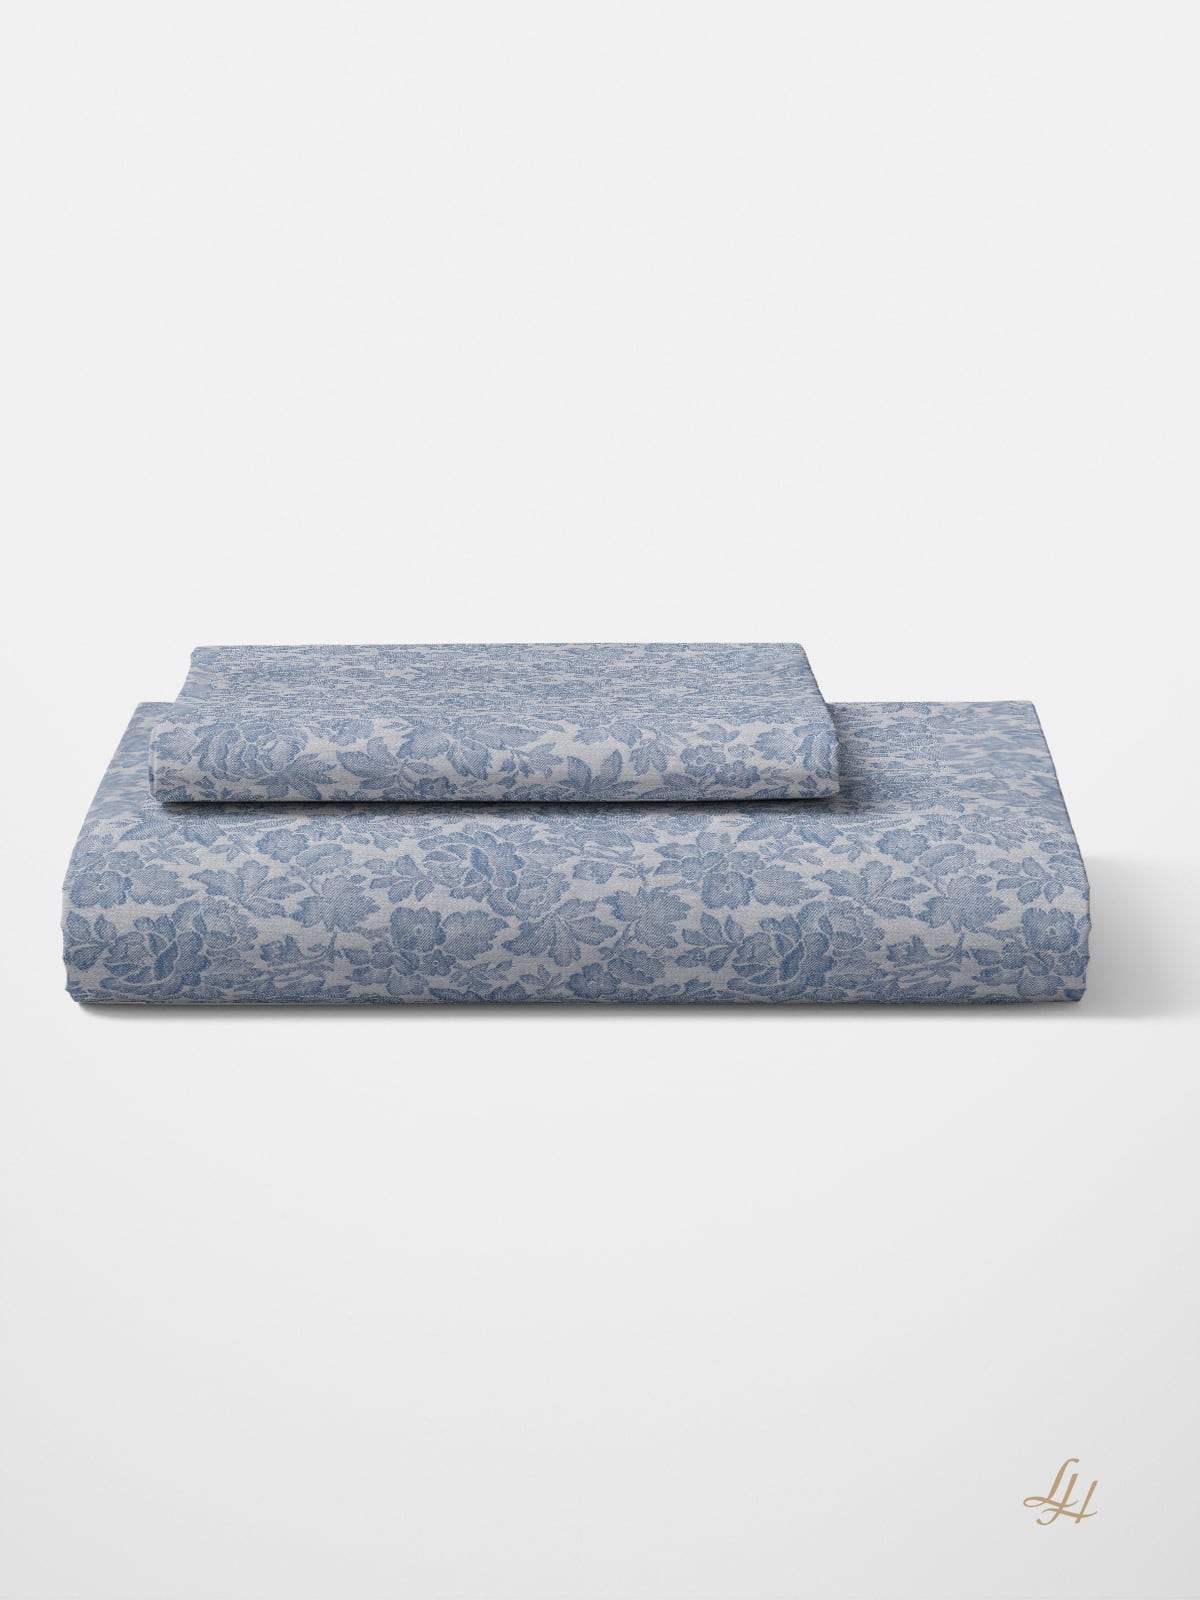 Bettbezug aus Reinleinen-Damast mit Muster Röschen in Altblau gefaltet